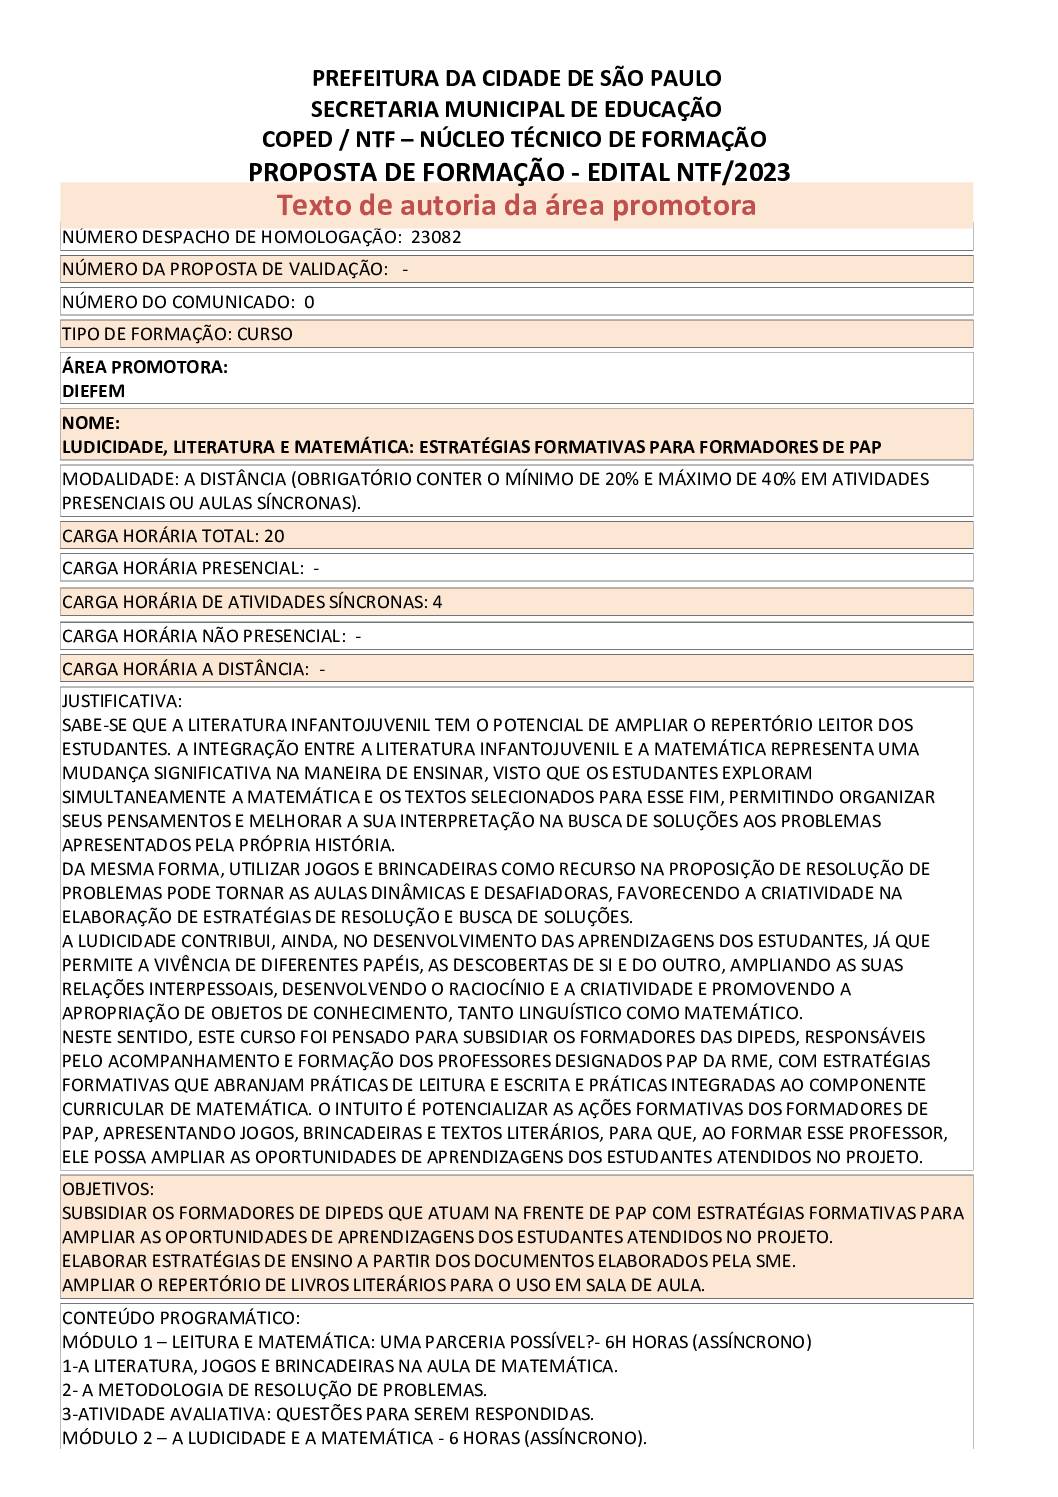 PDF com informações sobre o curso: LUDICIDADE, LITERATURA E MATEMÁTICA: ESTRATÉGIAS FORMATIVAS PARA FORMADORES DE PAP